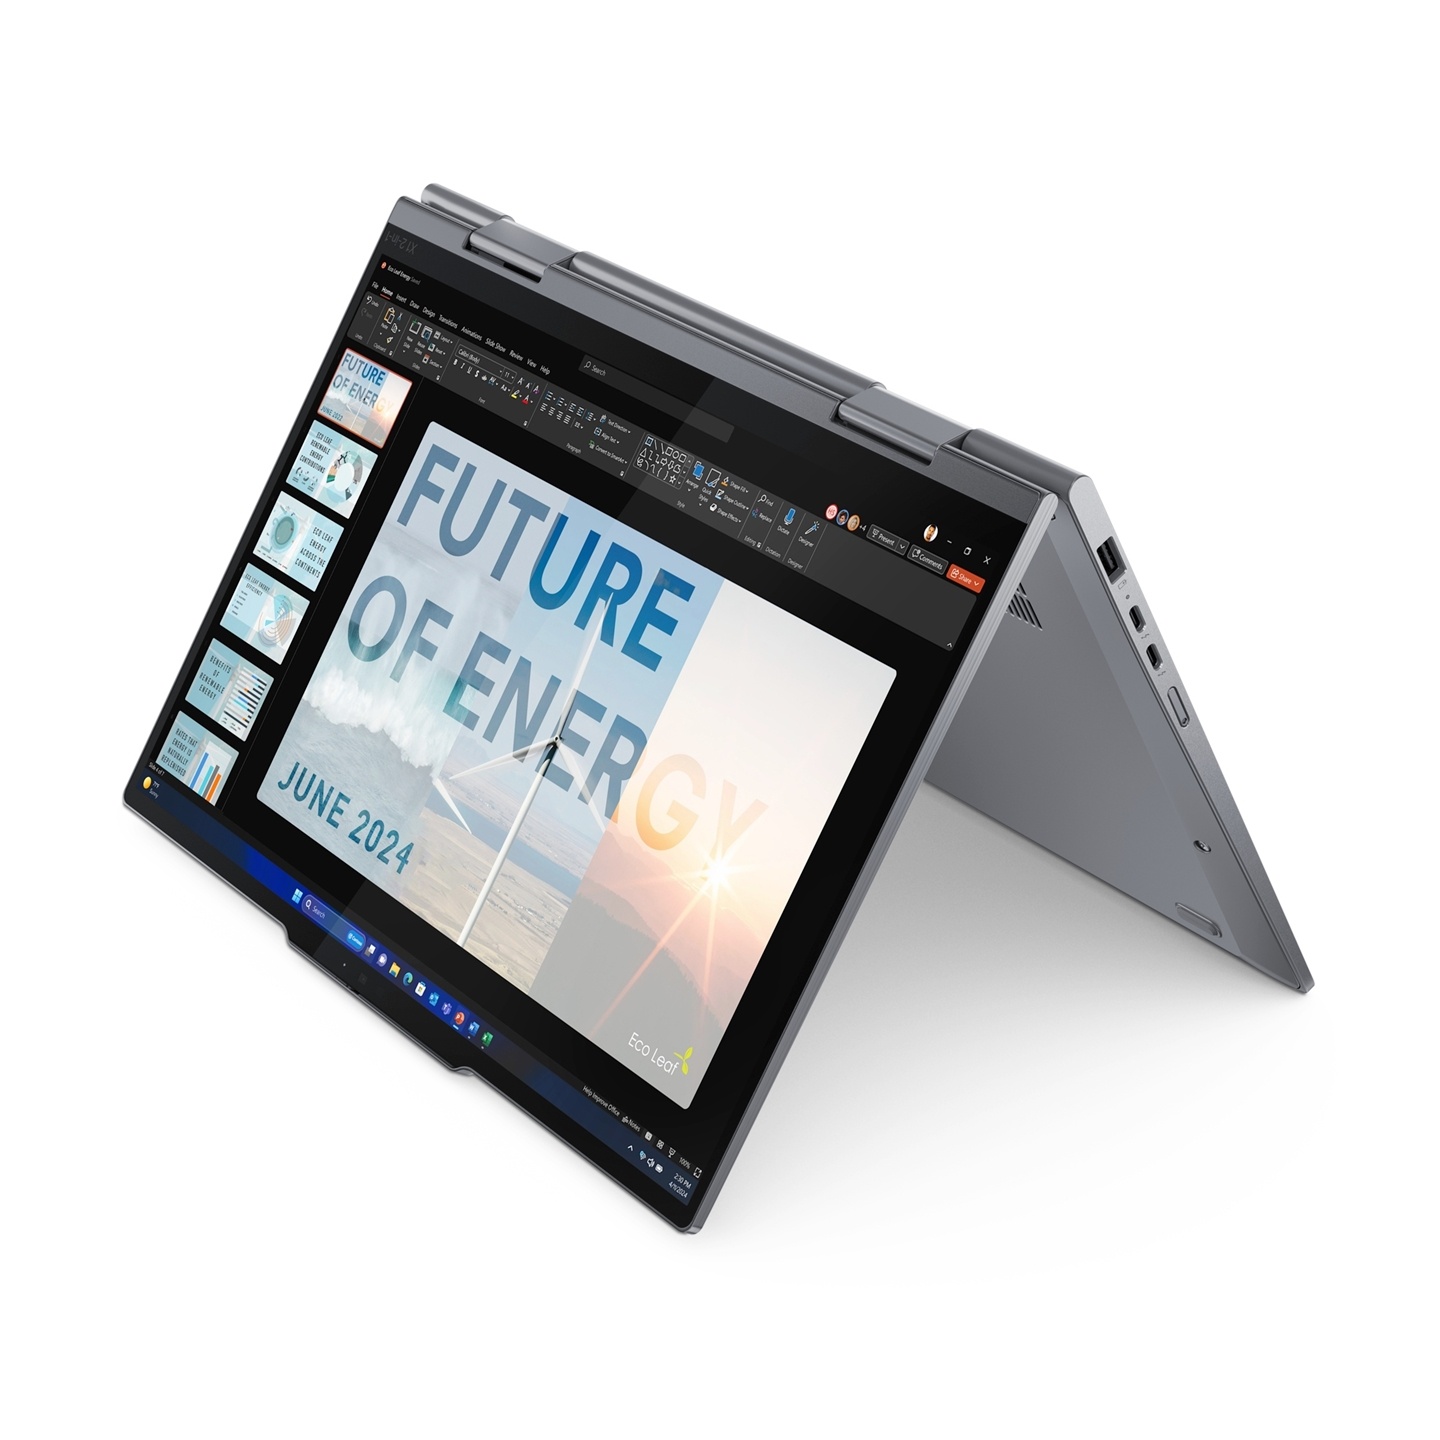 Lenovo 在 CES 公布多款筆電更新：X1 Carbon、X1 2-in-1 翻轉筆電與雙系統切換機種 ThinkBook Plus